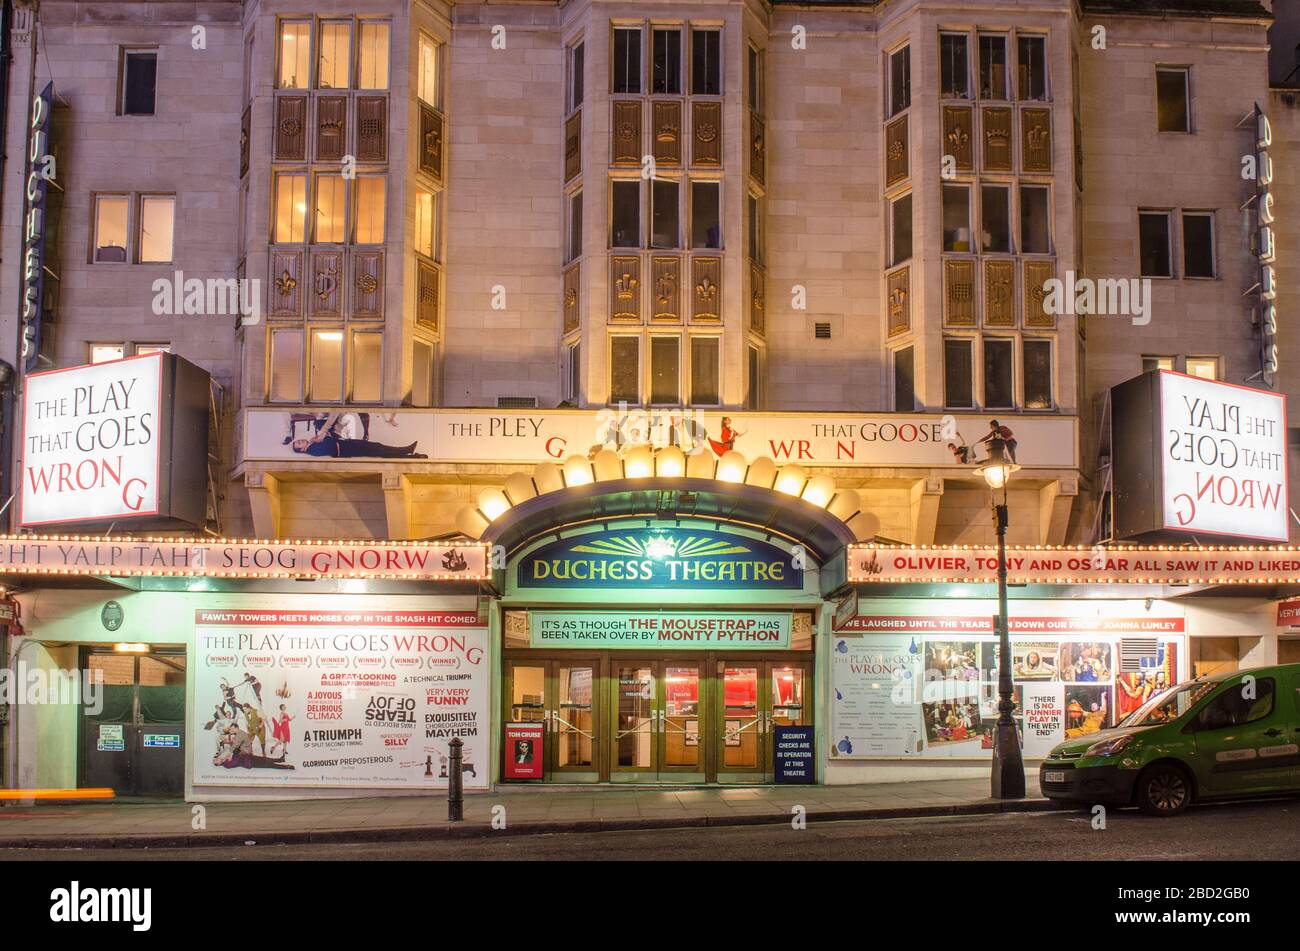 LONDRES- el Teatro Duchess ubicado en la calle Catherine en el West End de Londres, actualmente mostrando la obra que sale mal Foto de stock